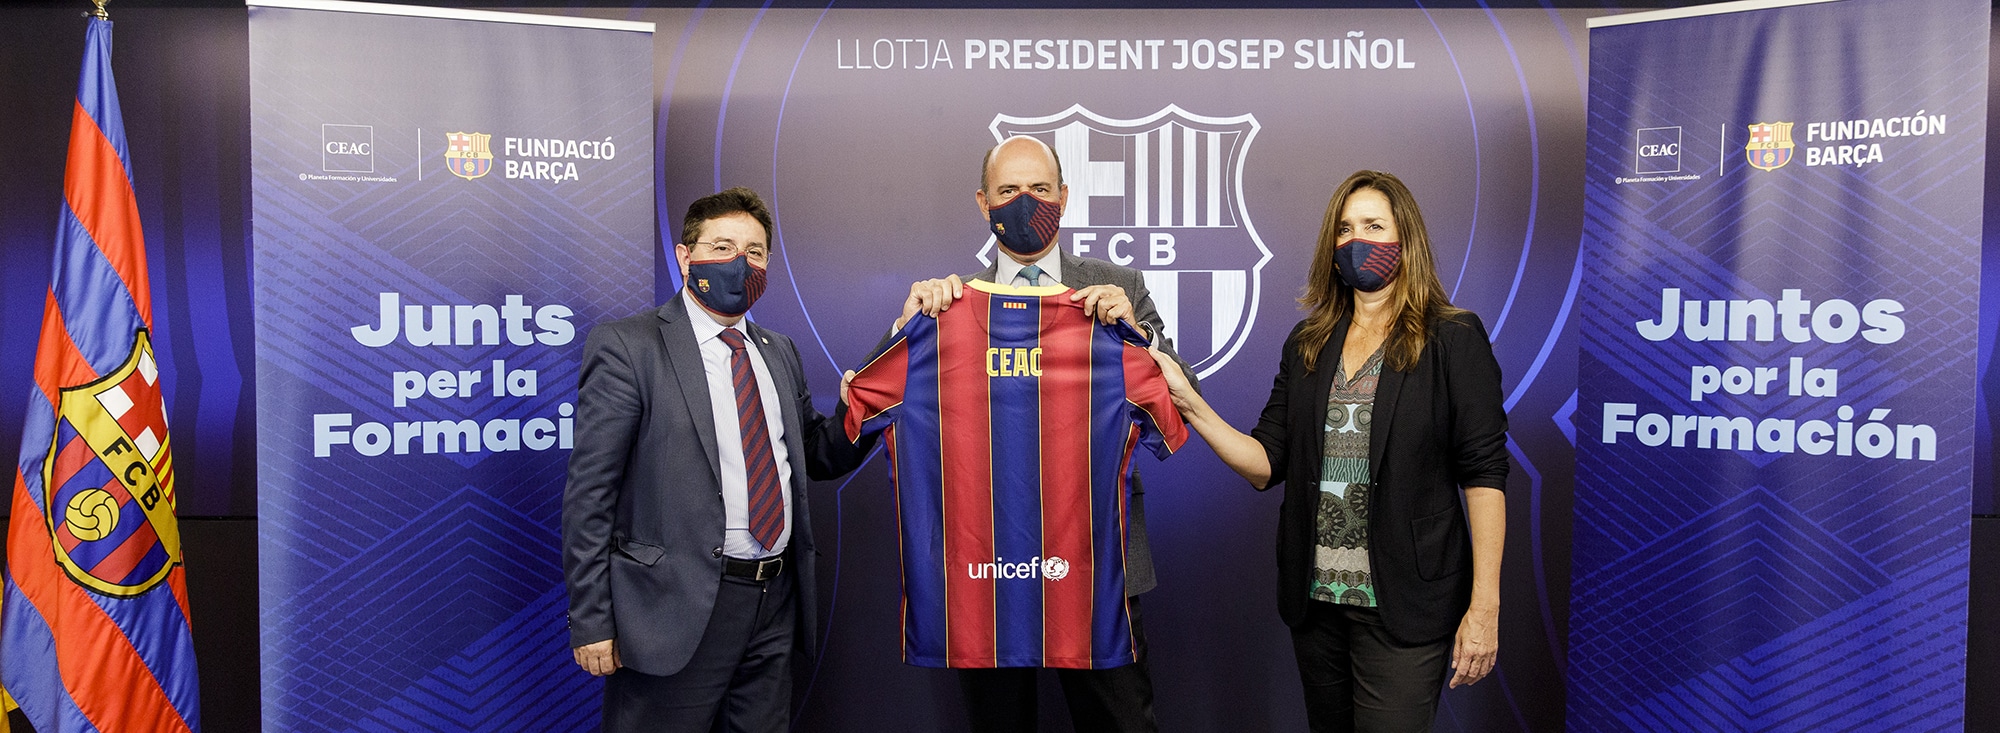 CEAC firma un proyecto solidario con la Fundación del Barça